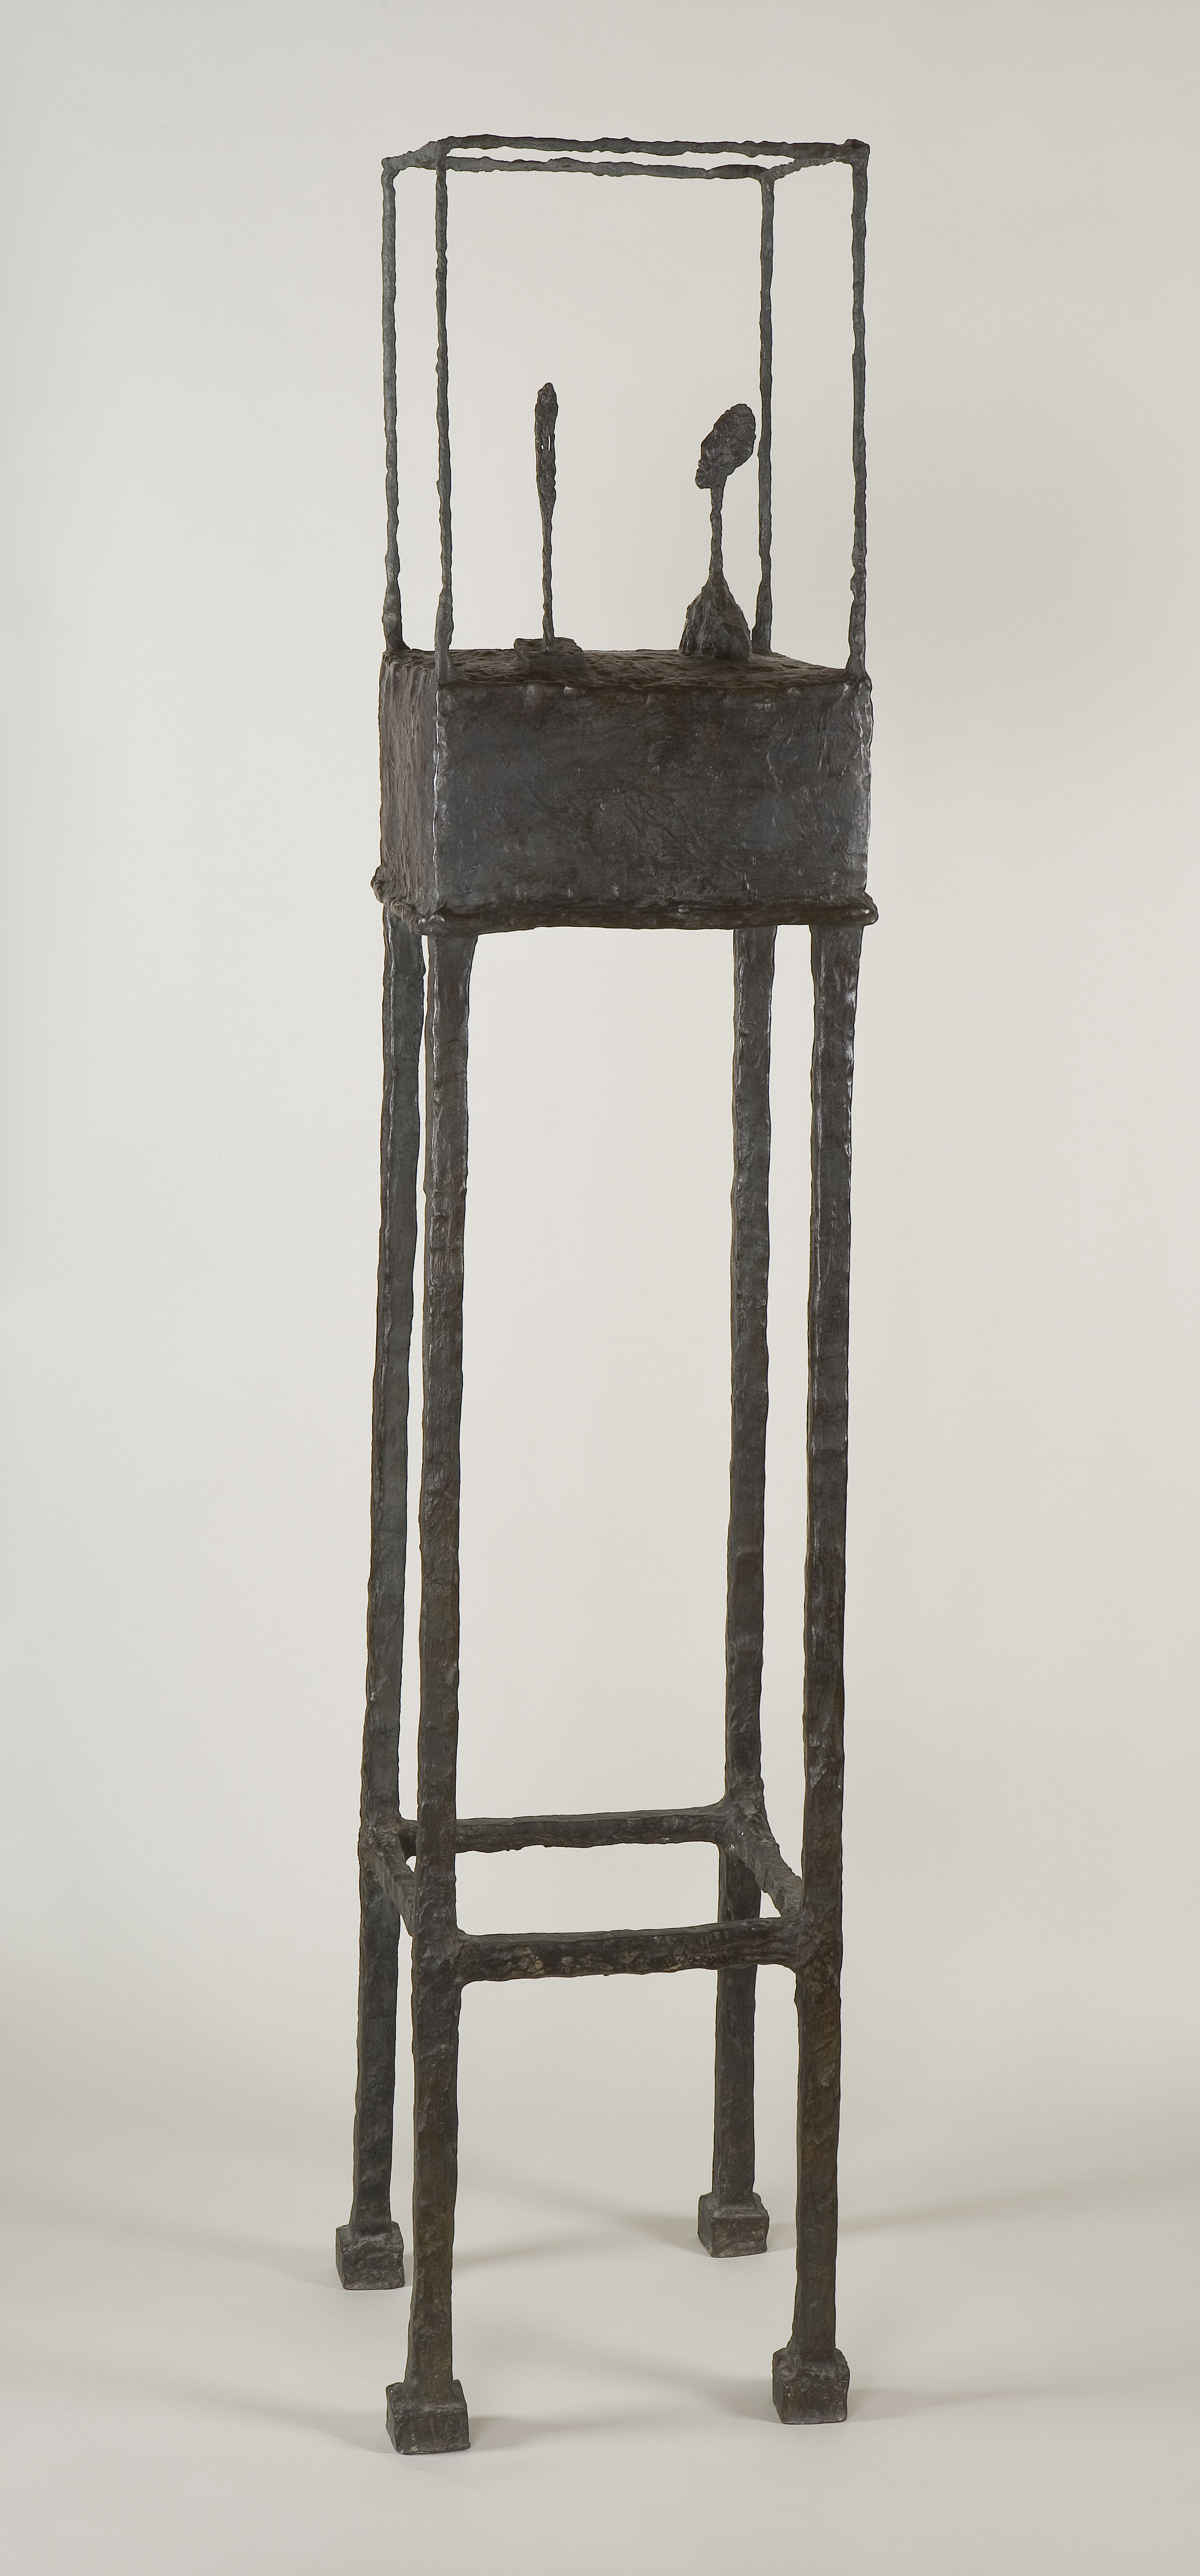 Alberto Giacometti: The Cage (Klec), 1950-1951. Foto: Fondation Giacometti, Paris